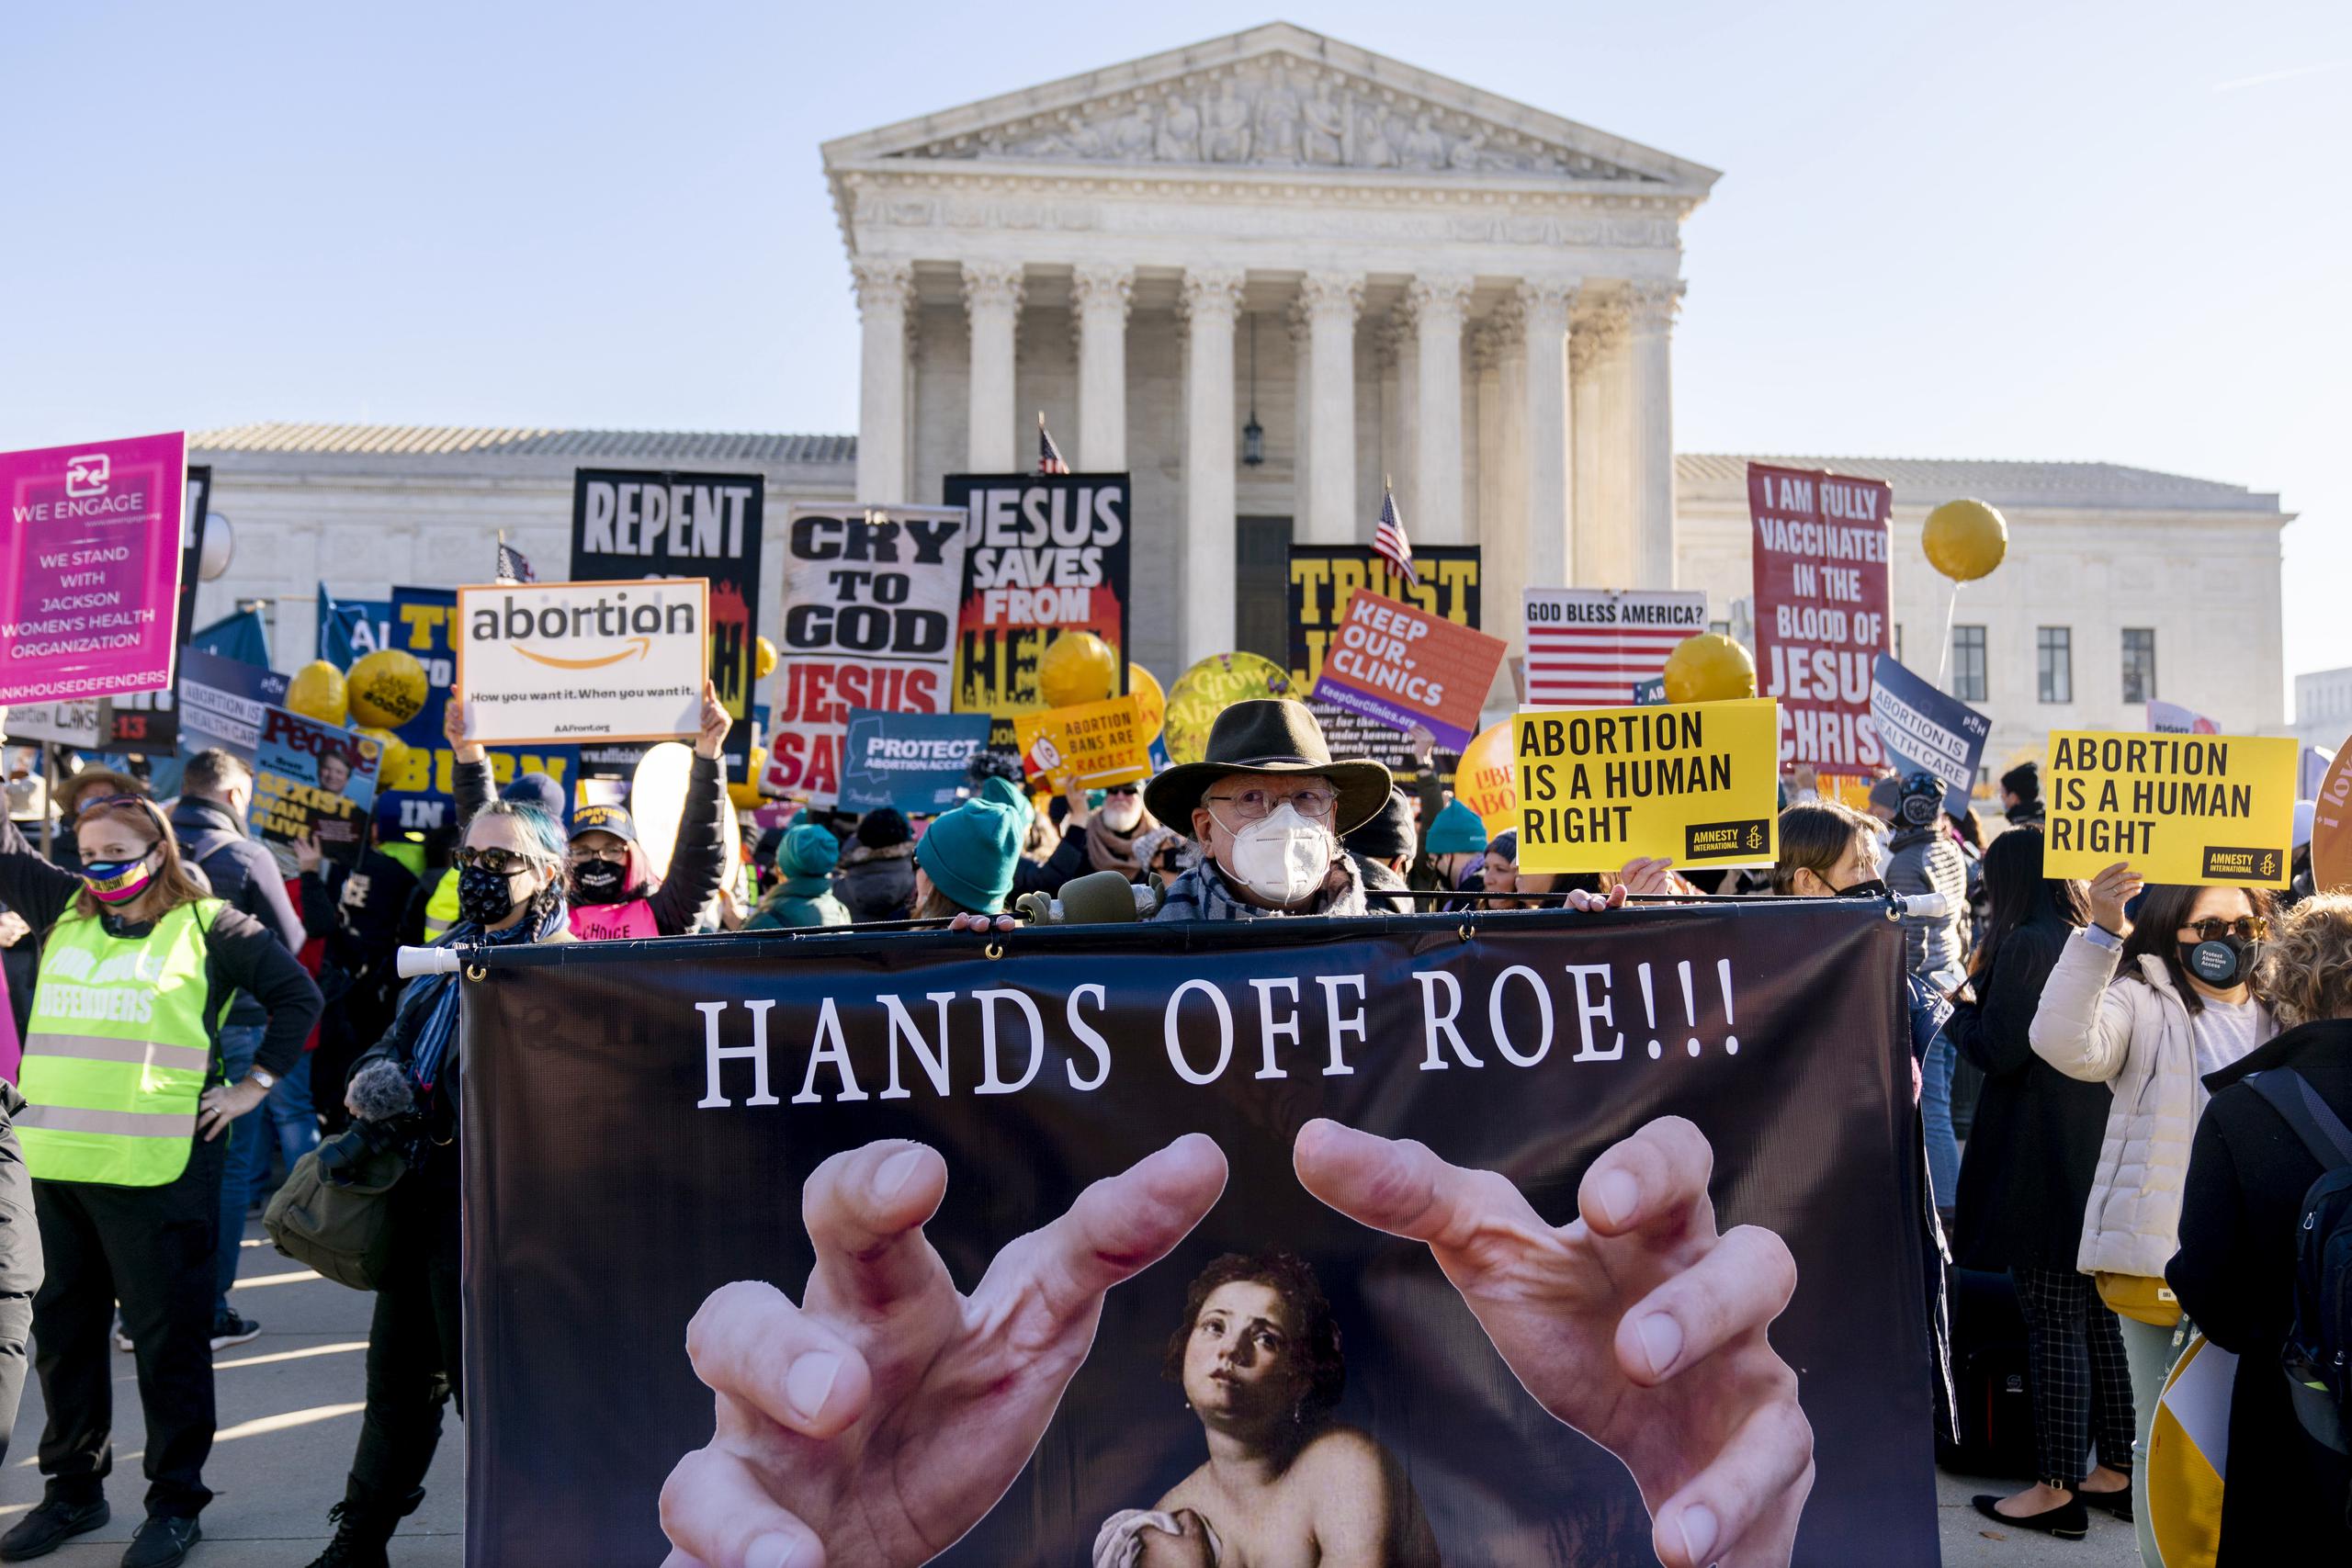 Stephen Parlato de Boulder, Colorado, sostiene un letrero que dice "Hands Off Roe!!!" ("¡No toques a Roe!") durante una manifestación de personas a favor y en contra del aborto frente a la Corte Suprema de Estados Unidos el 1 de diciembre de 2021 en Washington. (AP Foto/Andrew Harnik, Archivo)